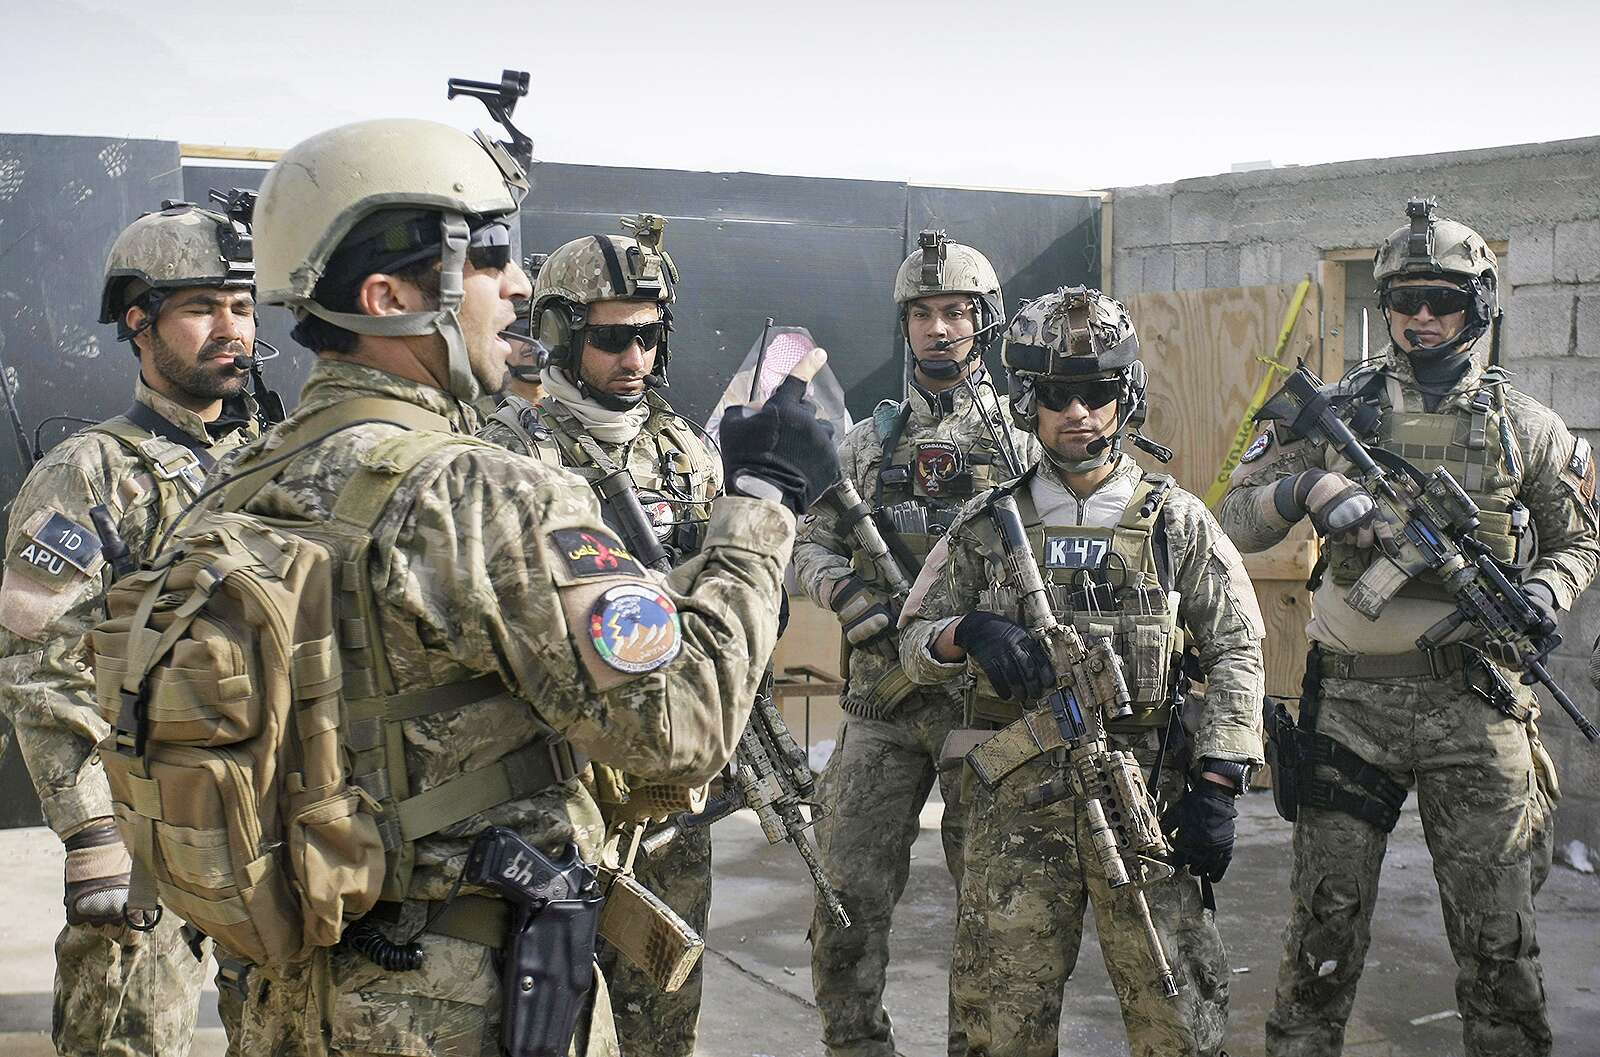 U.S. General Sees Afghan Troop Gains In Fight Against Taliban 41